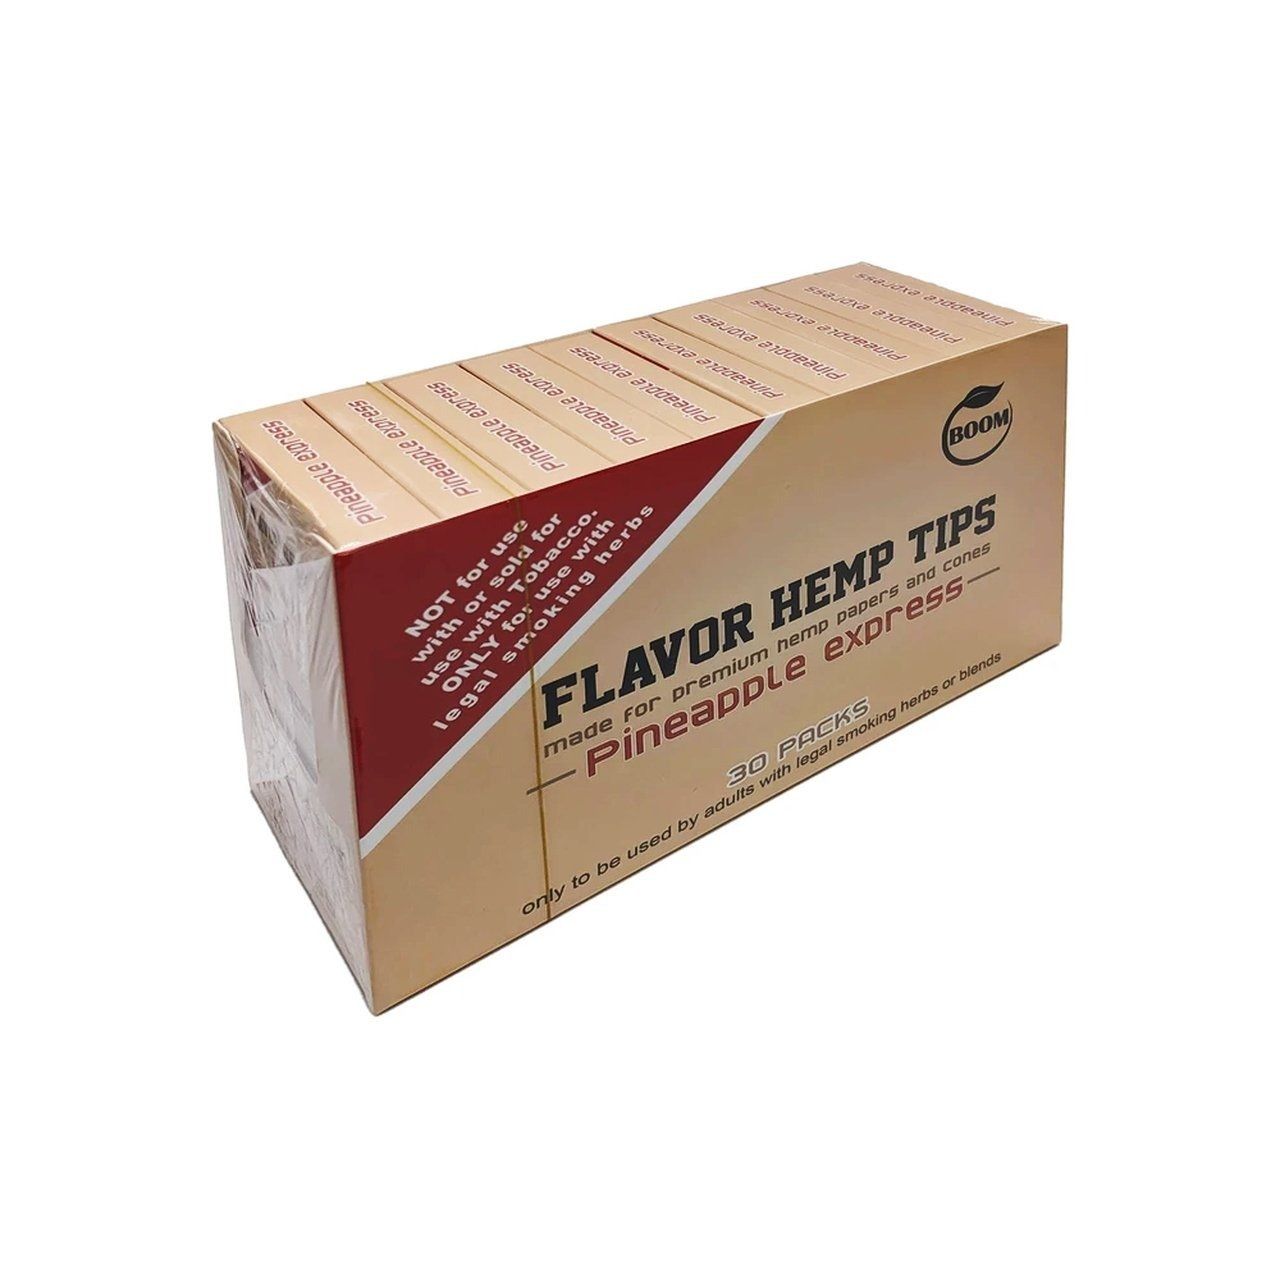 Boom Flavor Hemp Tips - 30 Packs Flower Power Packages 